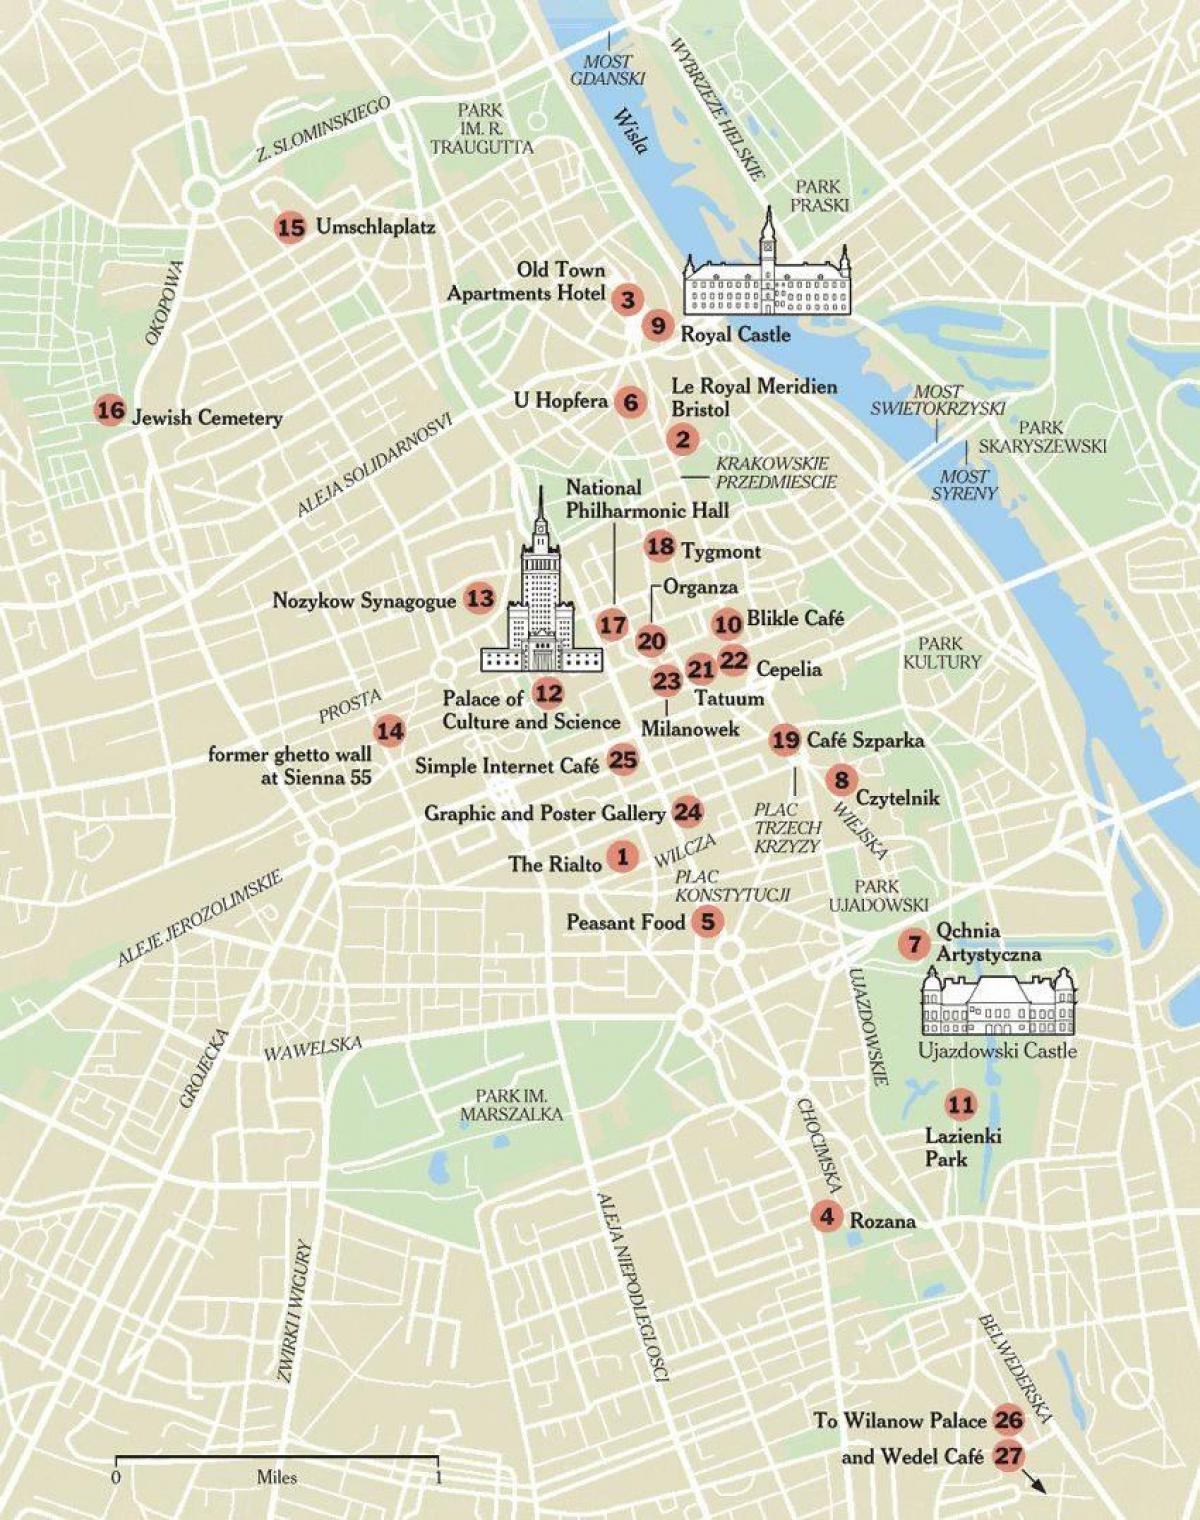 Mapa ng Warsaw sa paglalakad tour 